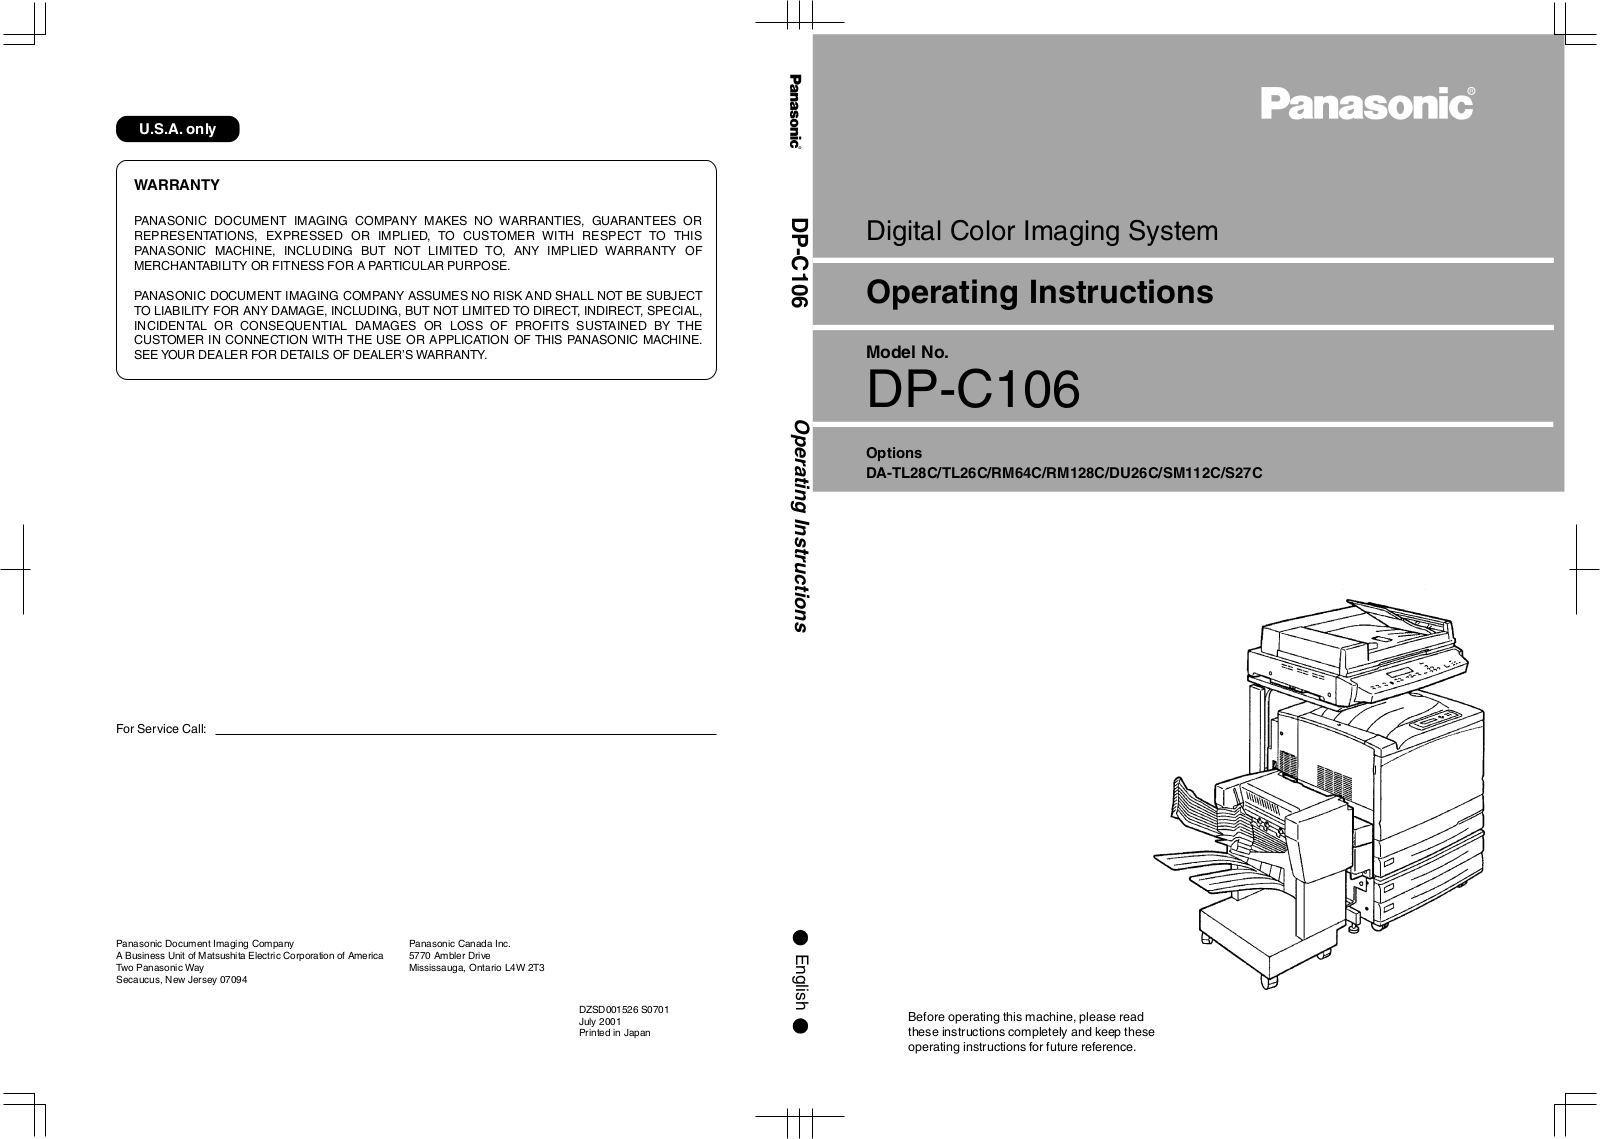 Panasonic DP-C106 User Manual